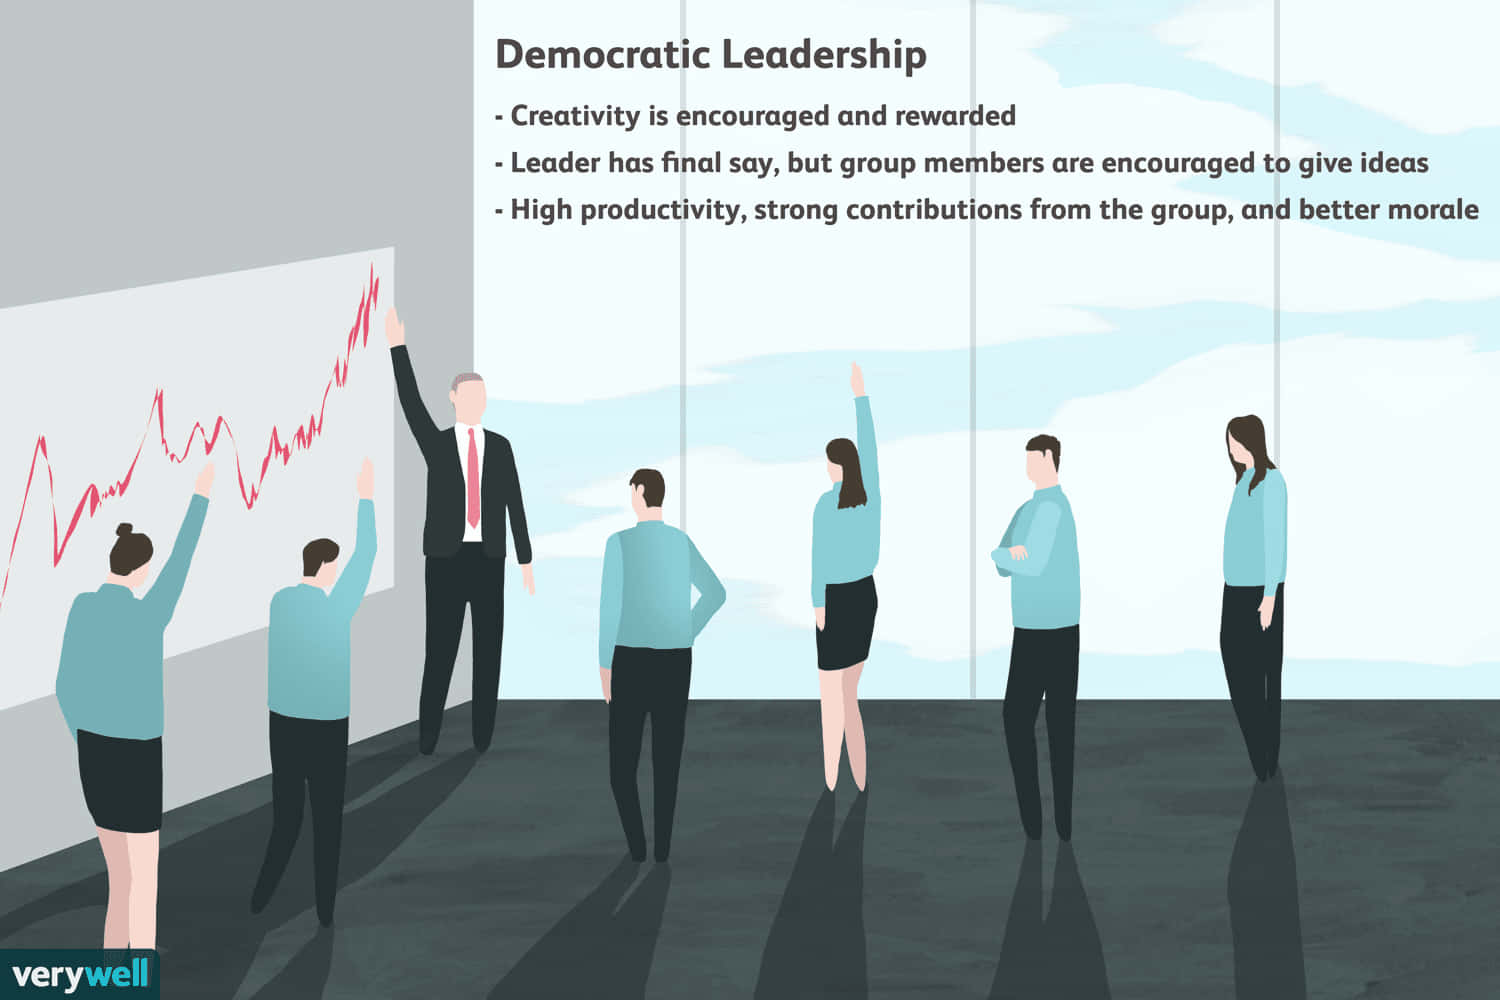 Leadershipdemocratico - Una Guida Per Democratizzare La Leadership